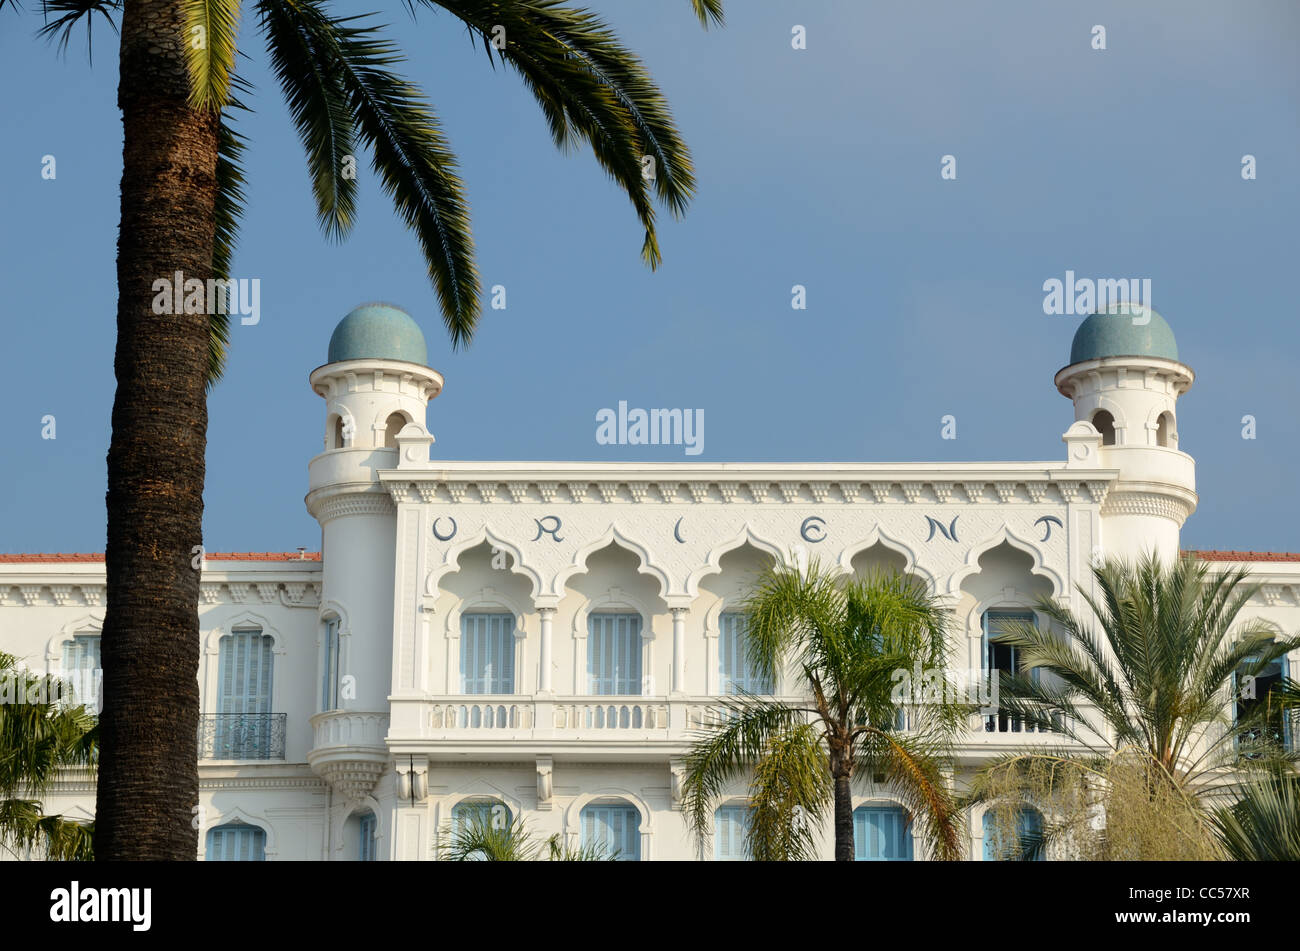 Fassade im orientalischen Stil des 'Orient Palace', ein ehemaliges Belle Epoque Hotel, jetzt Luxus Apartments Menton Französische Riviera oder Côte d'Azur Frankreich Stockfoto